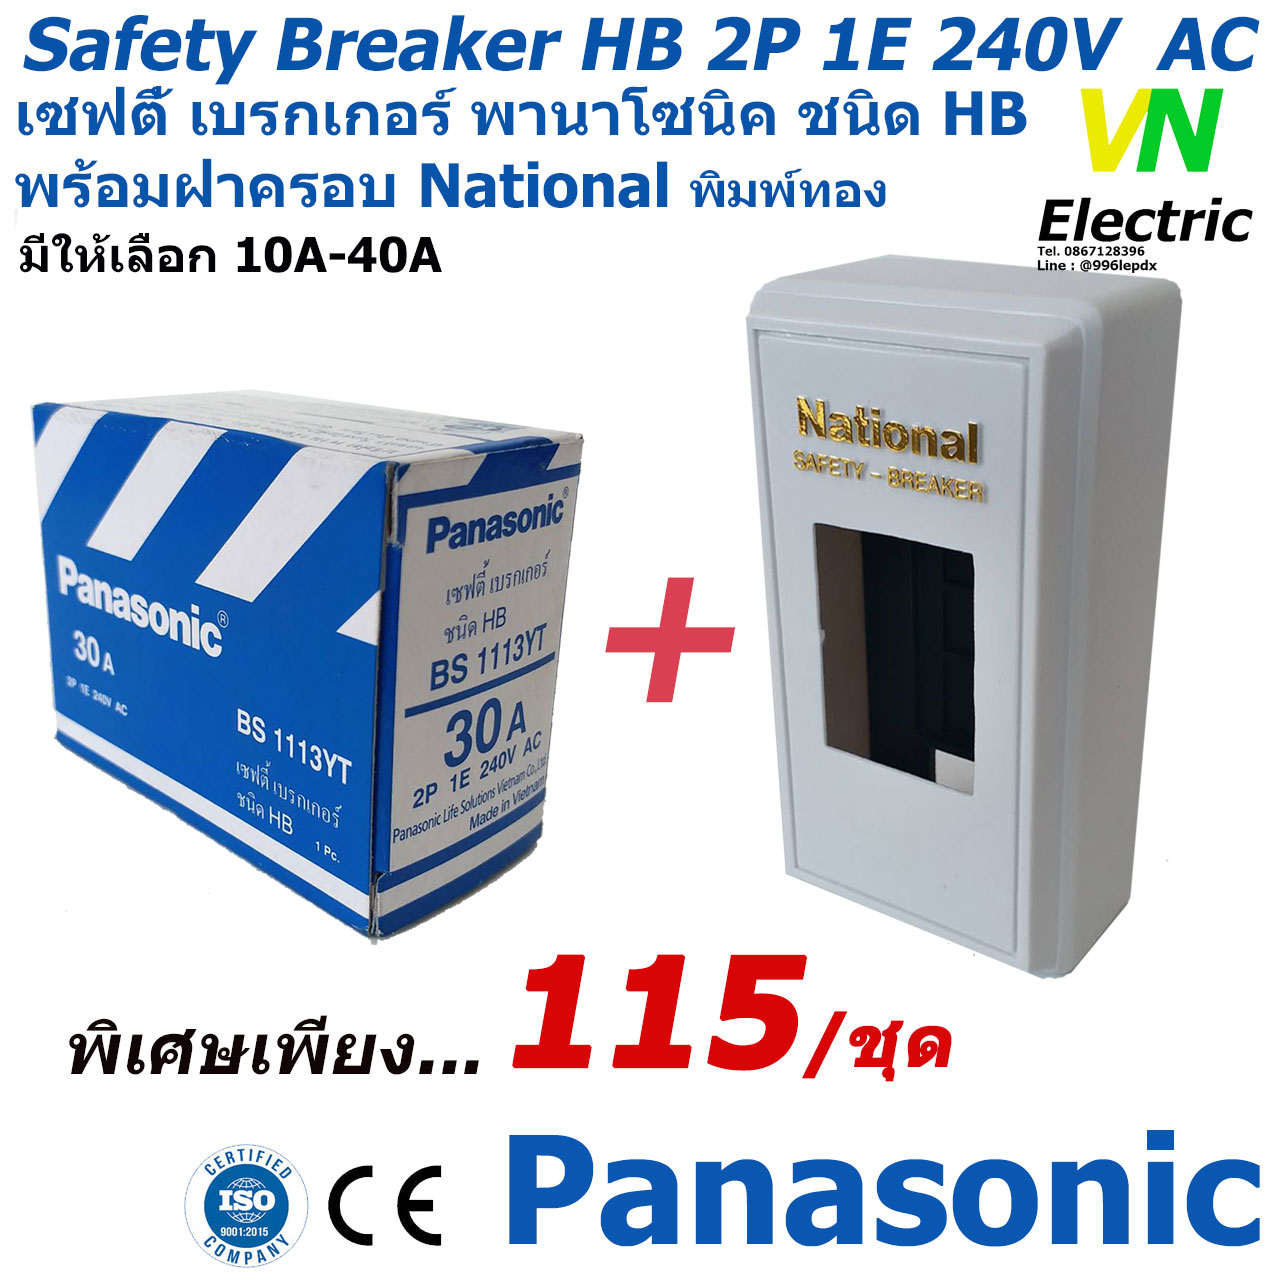 เซฟตี้เบรกเกอร์ พานาโซนิค 2P 1E 240V AC safety breaker Panasonic ฝาครอบเบรกเกอร์ National  รับประกันของแท้100%